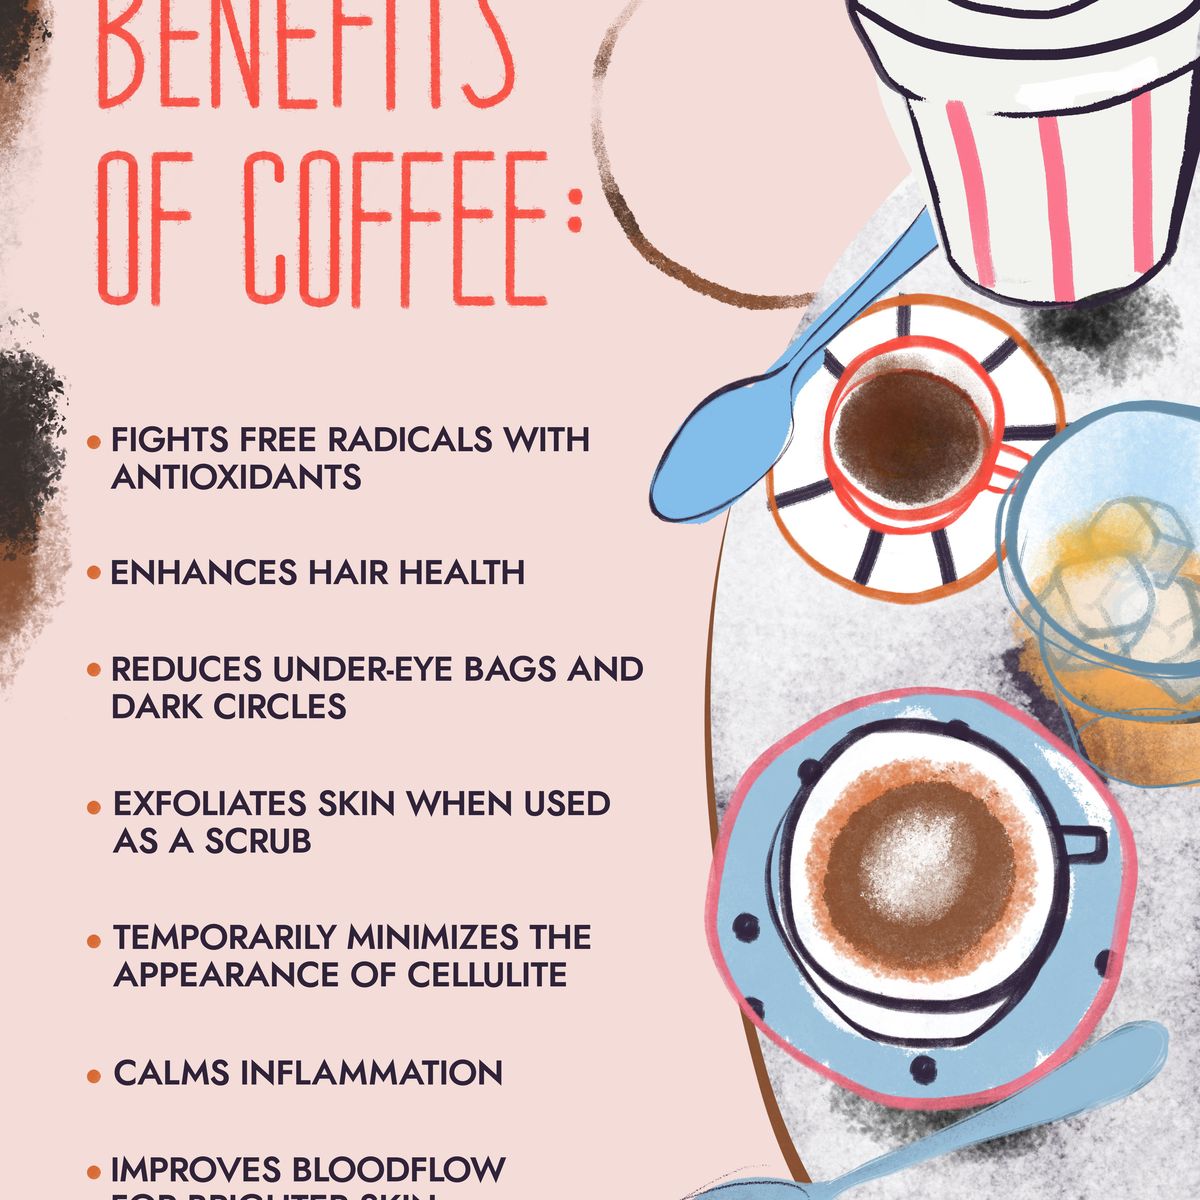 יתרונות היופי של קפה